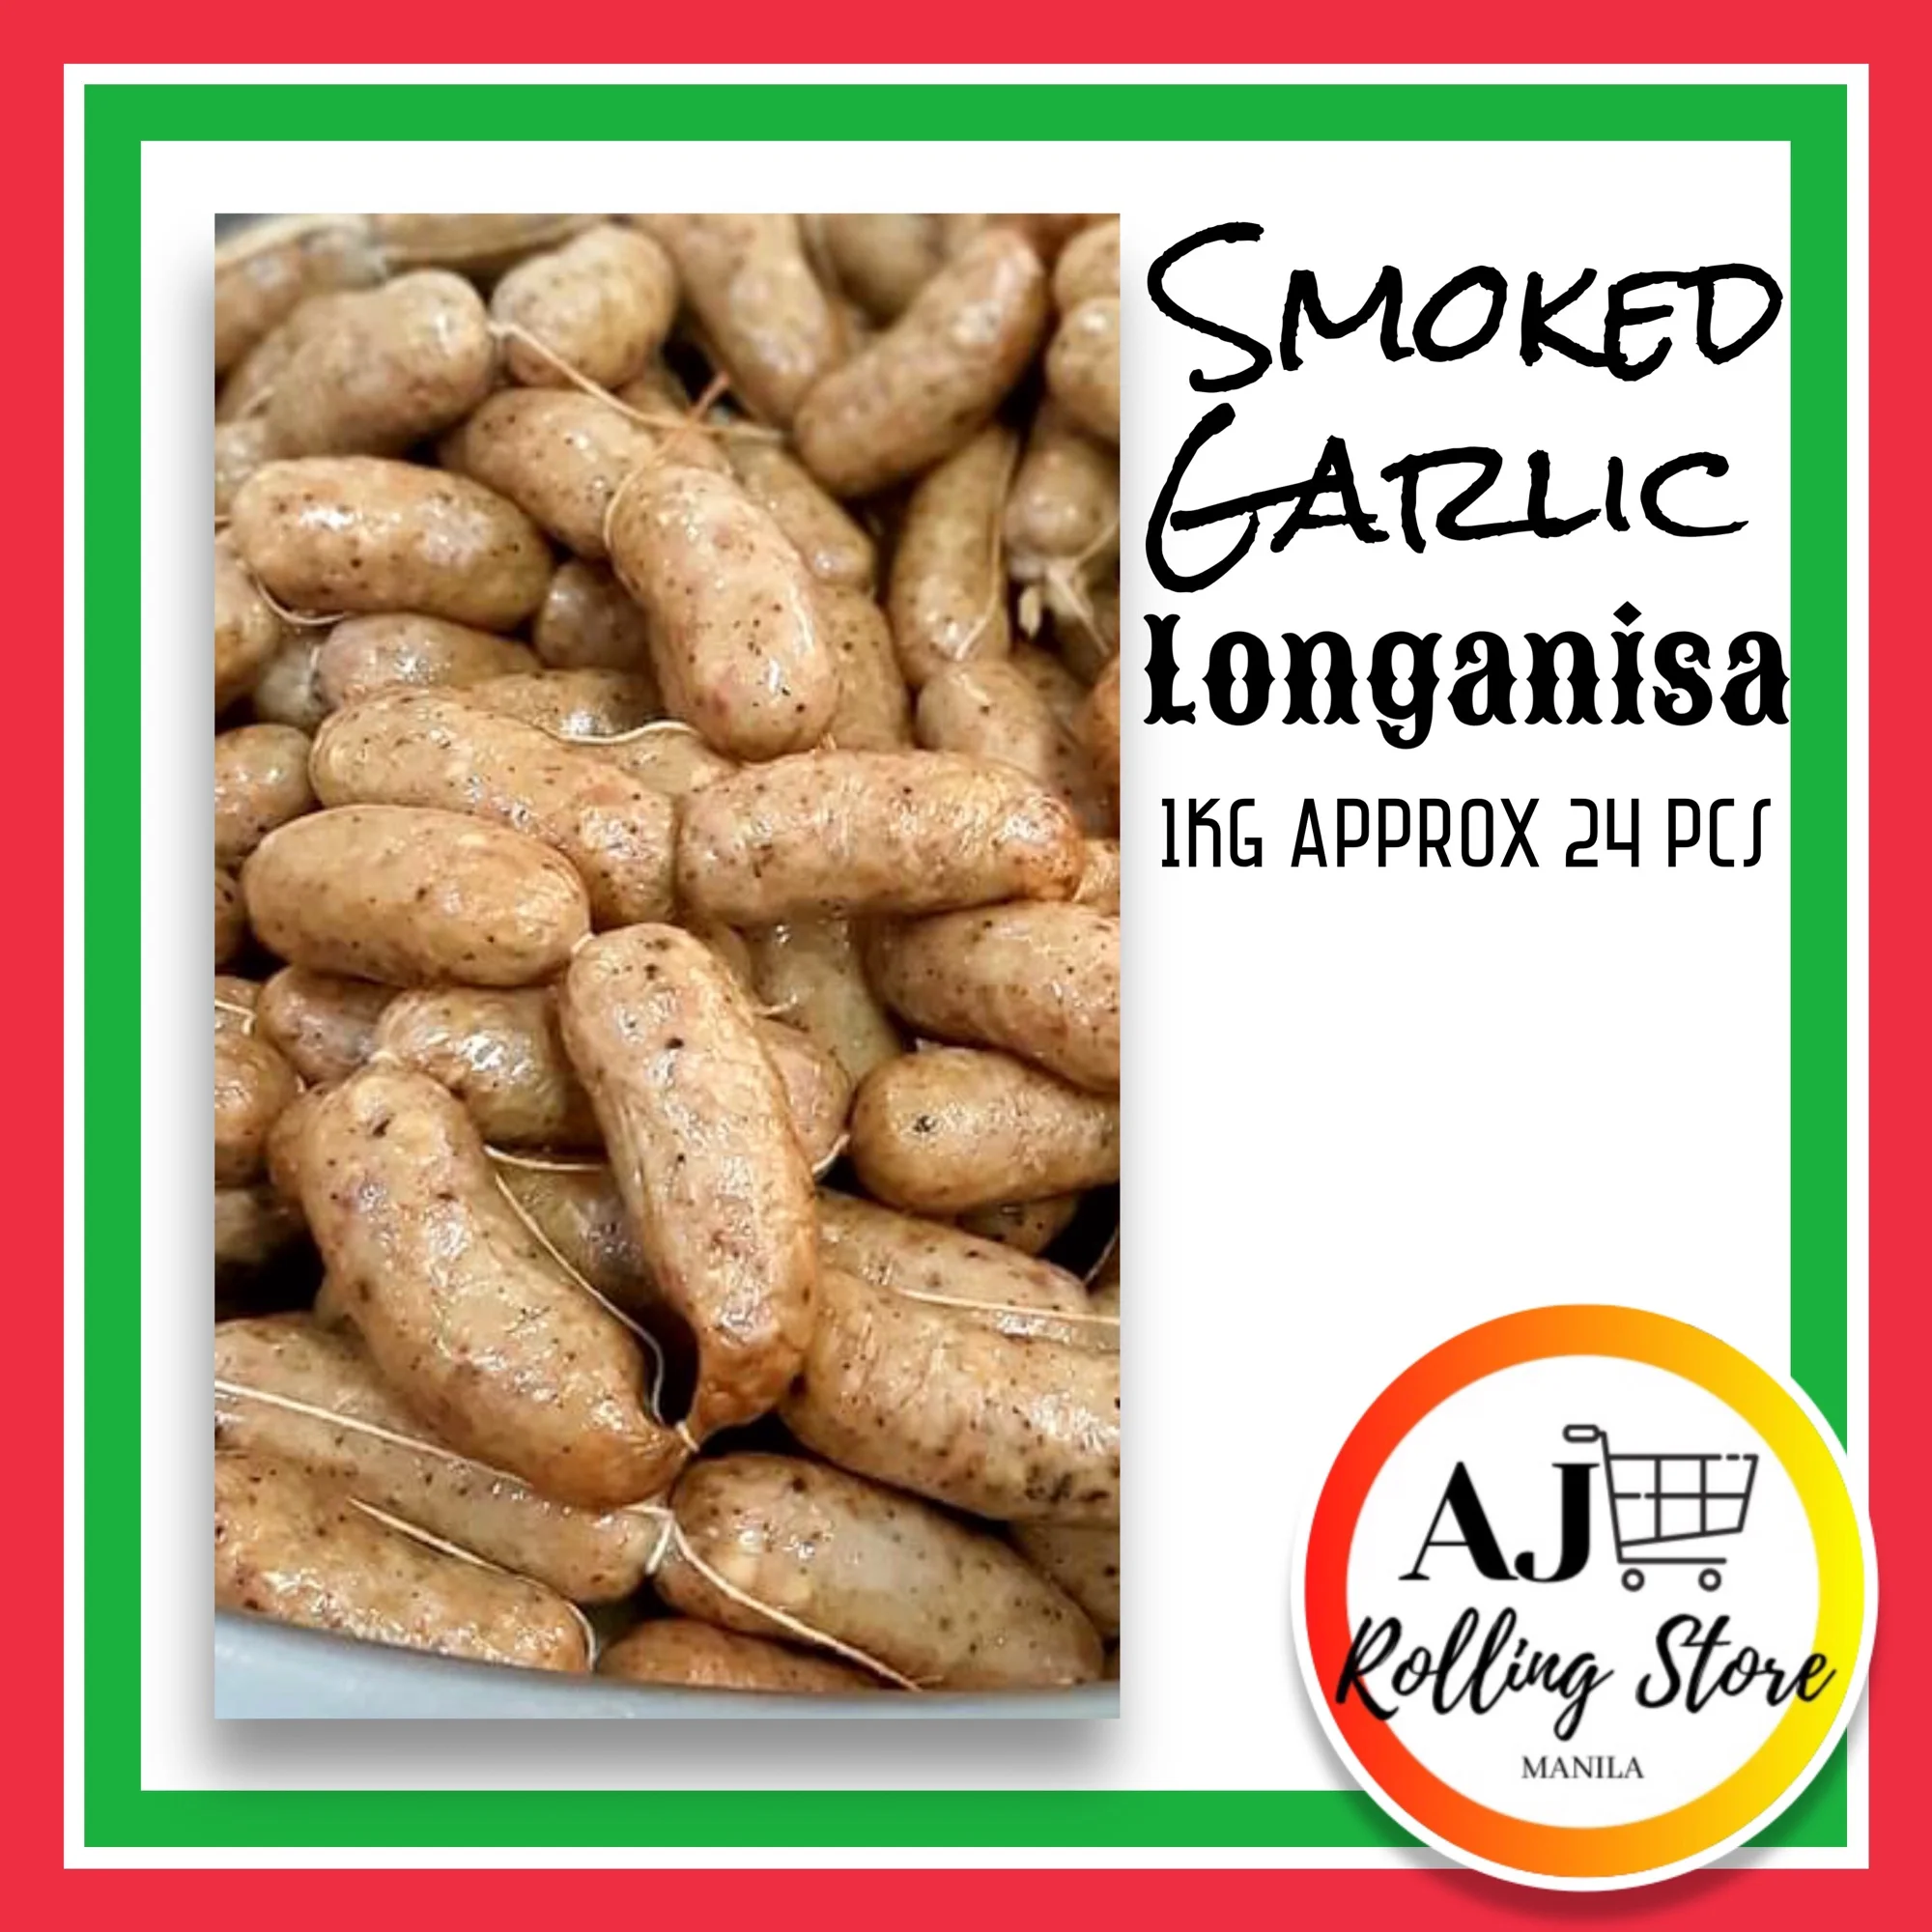 Smoked Garlic Longanisa 1Kg Approx 24pcs